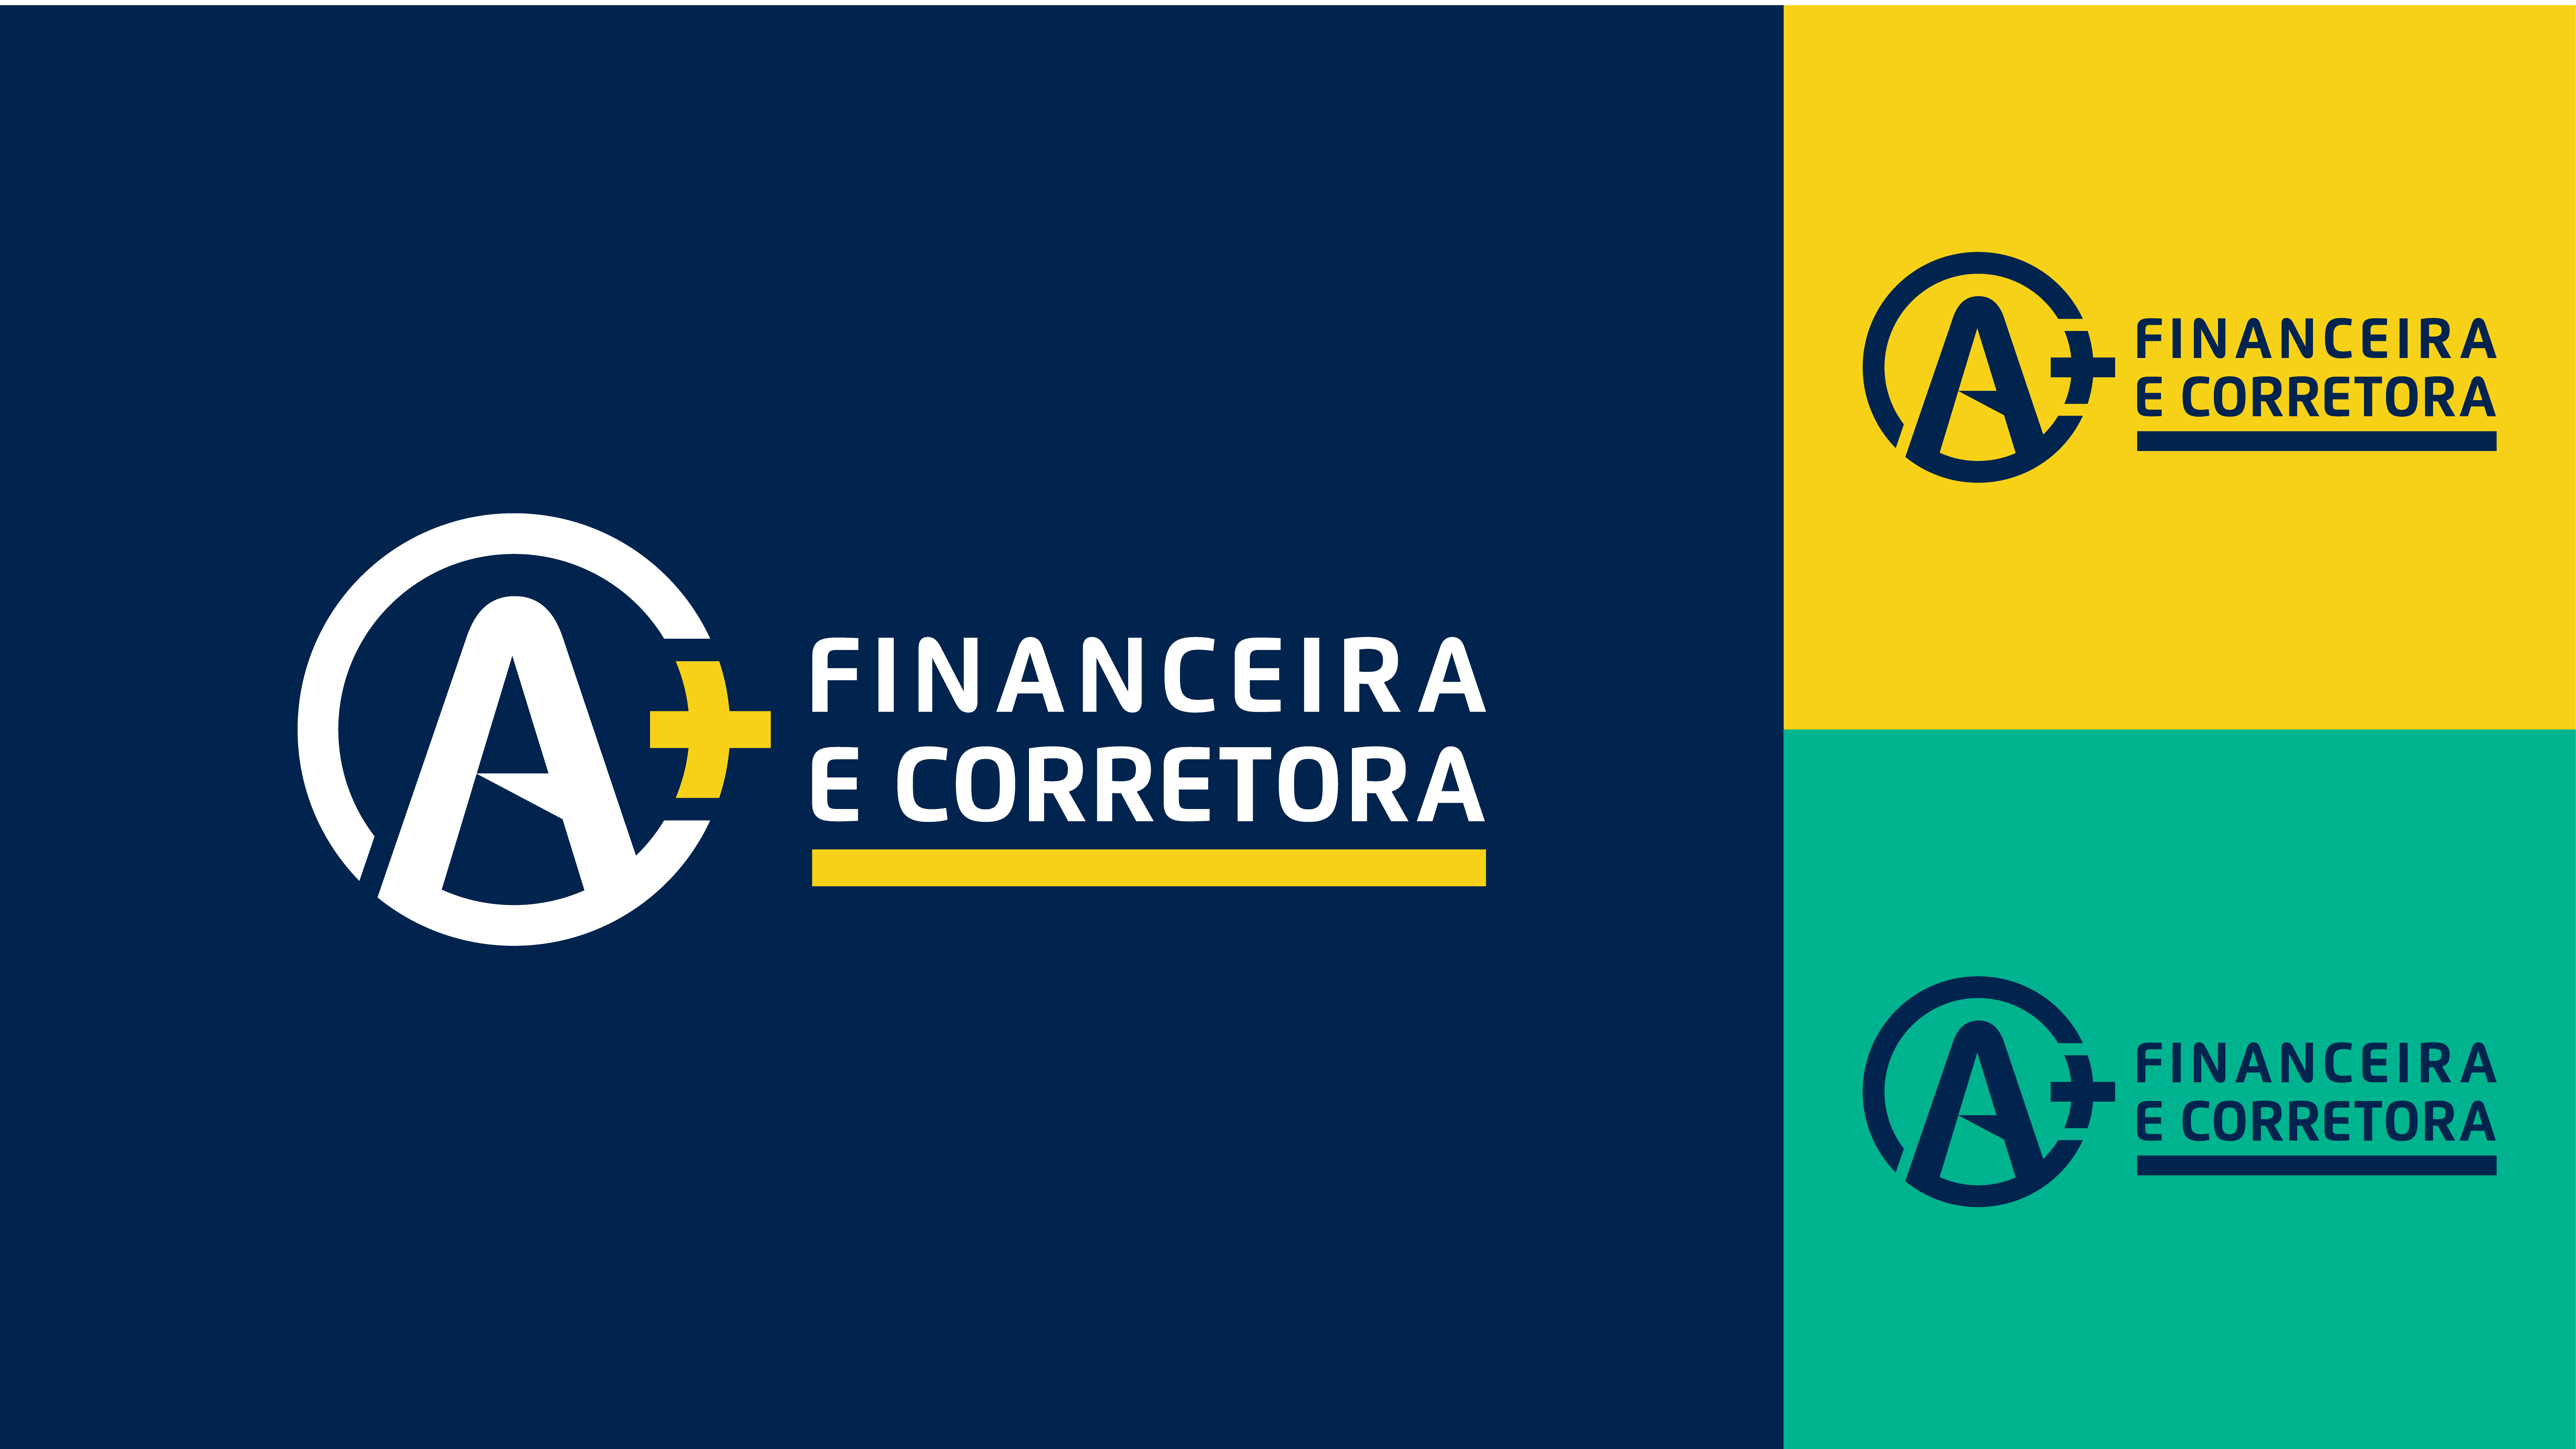 A+ FINANCEIRA E CORRETORA - Identidade Visual (6)